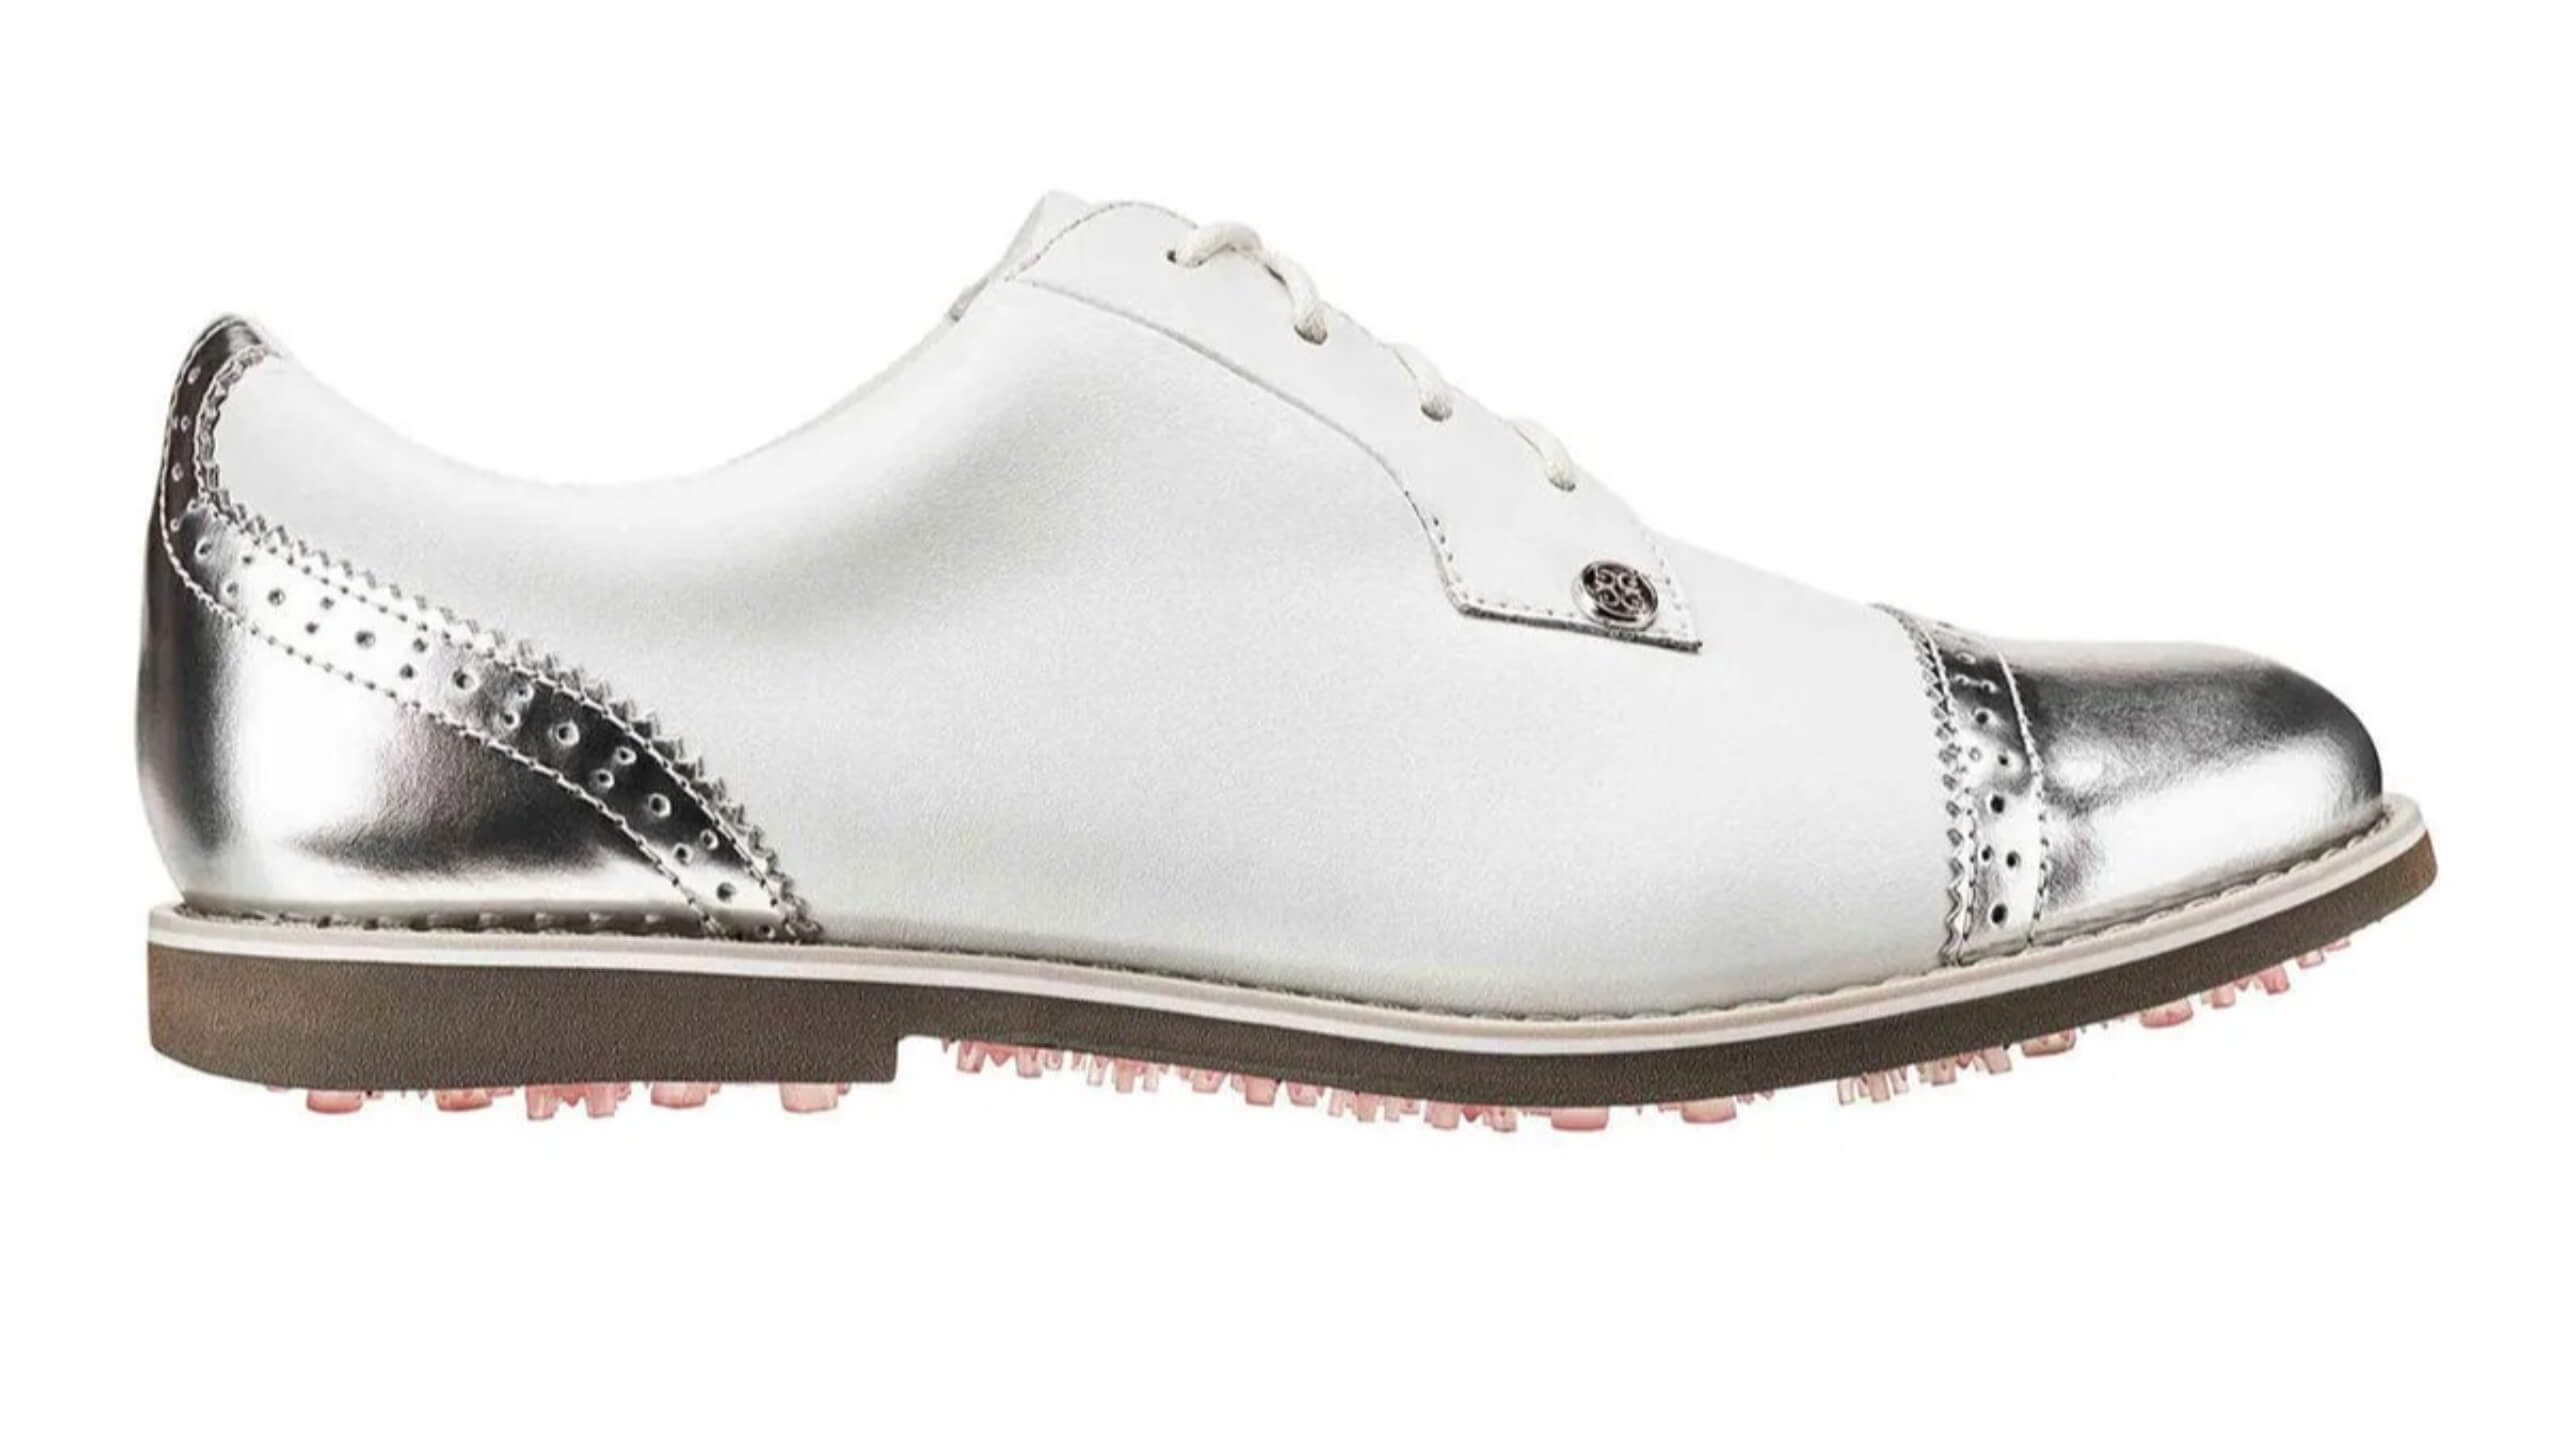 G/Fore Women's MG4+ Golf Shoe